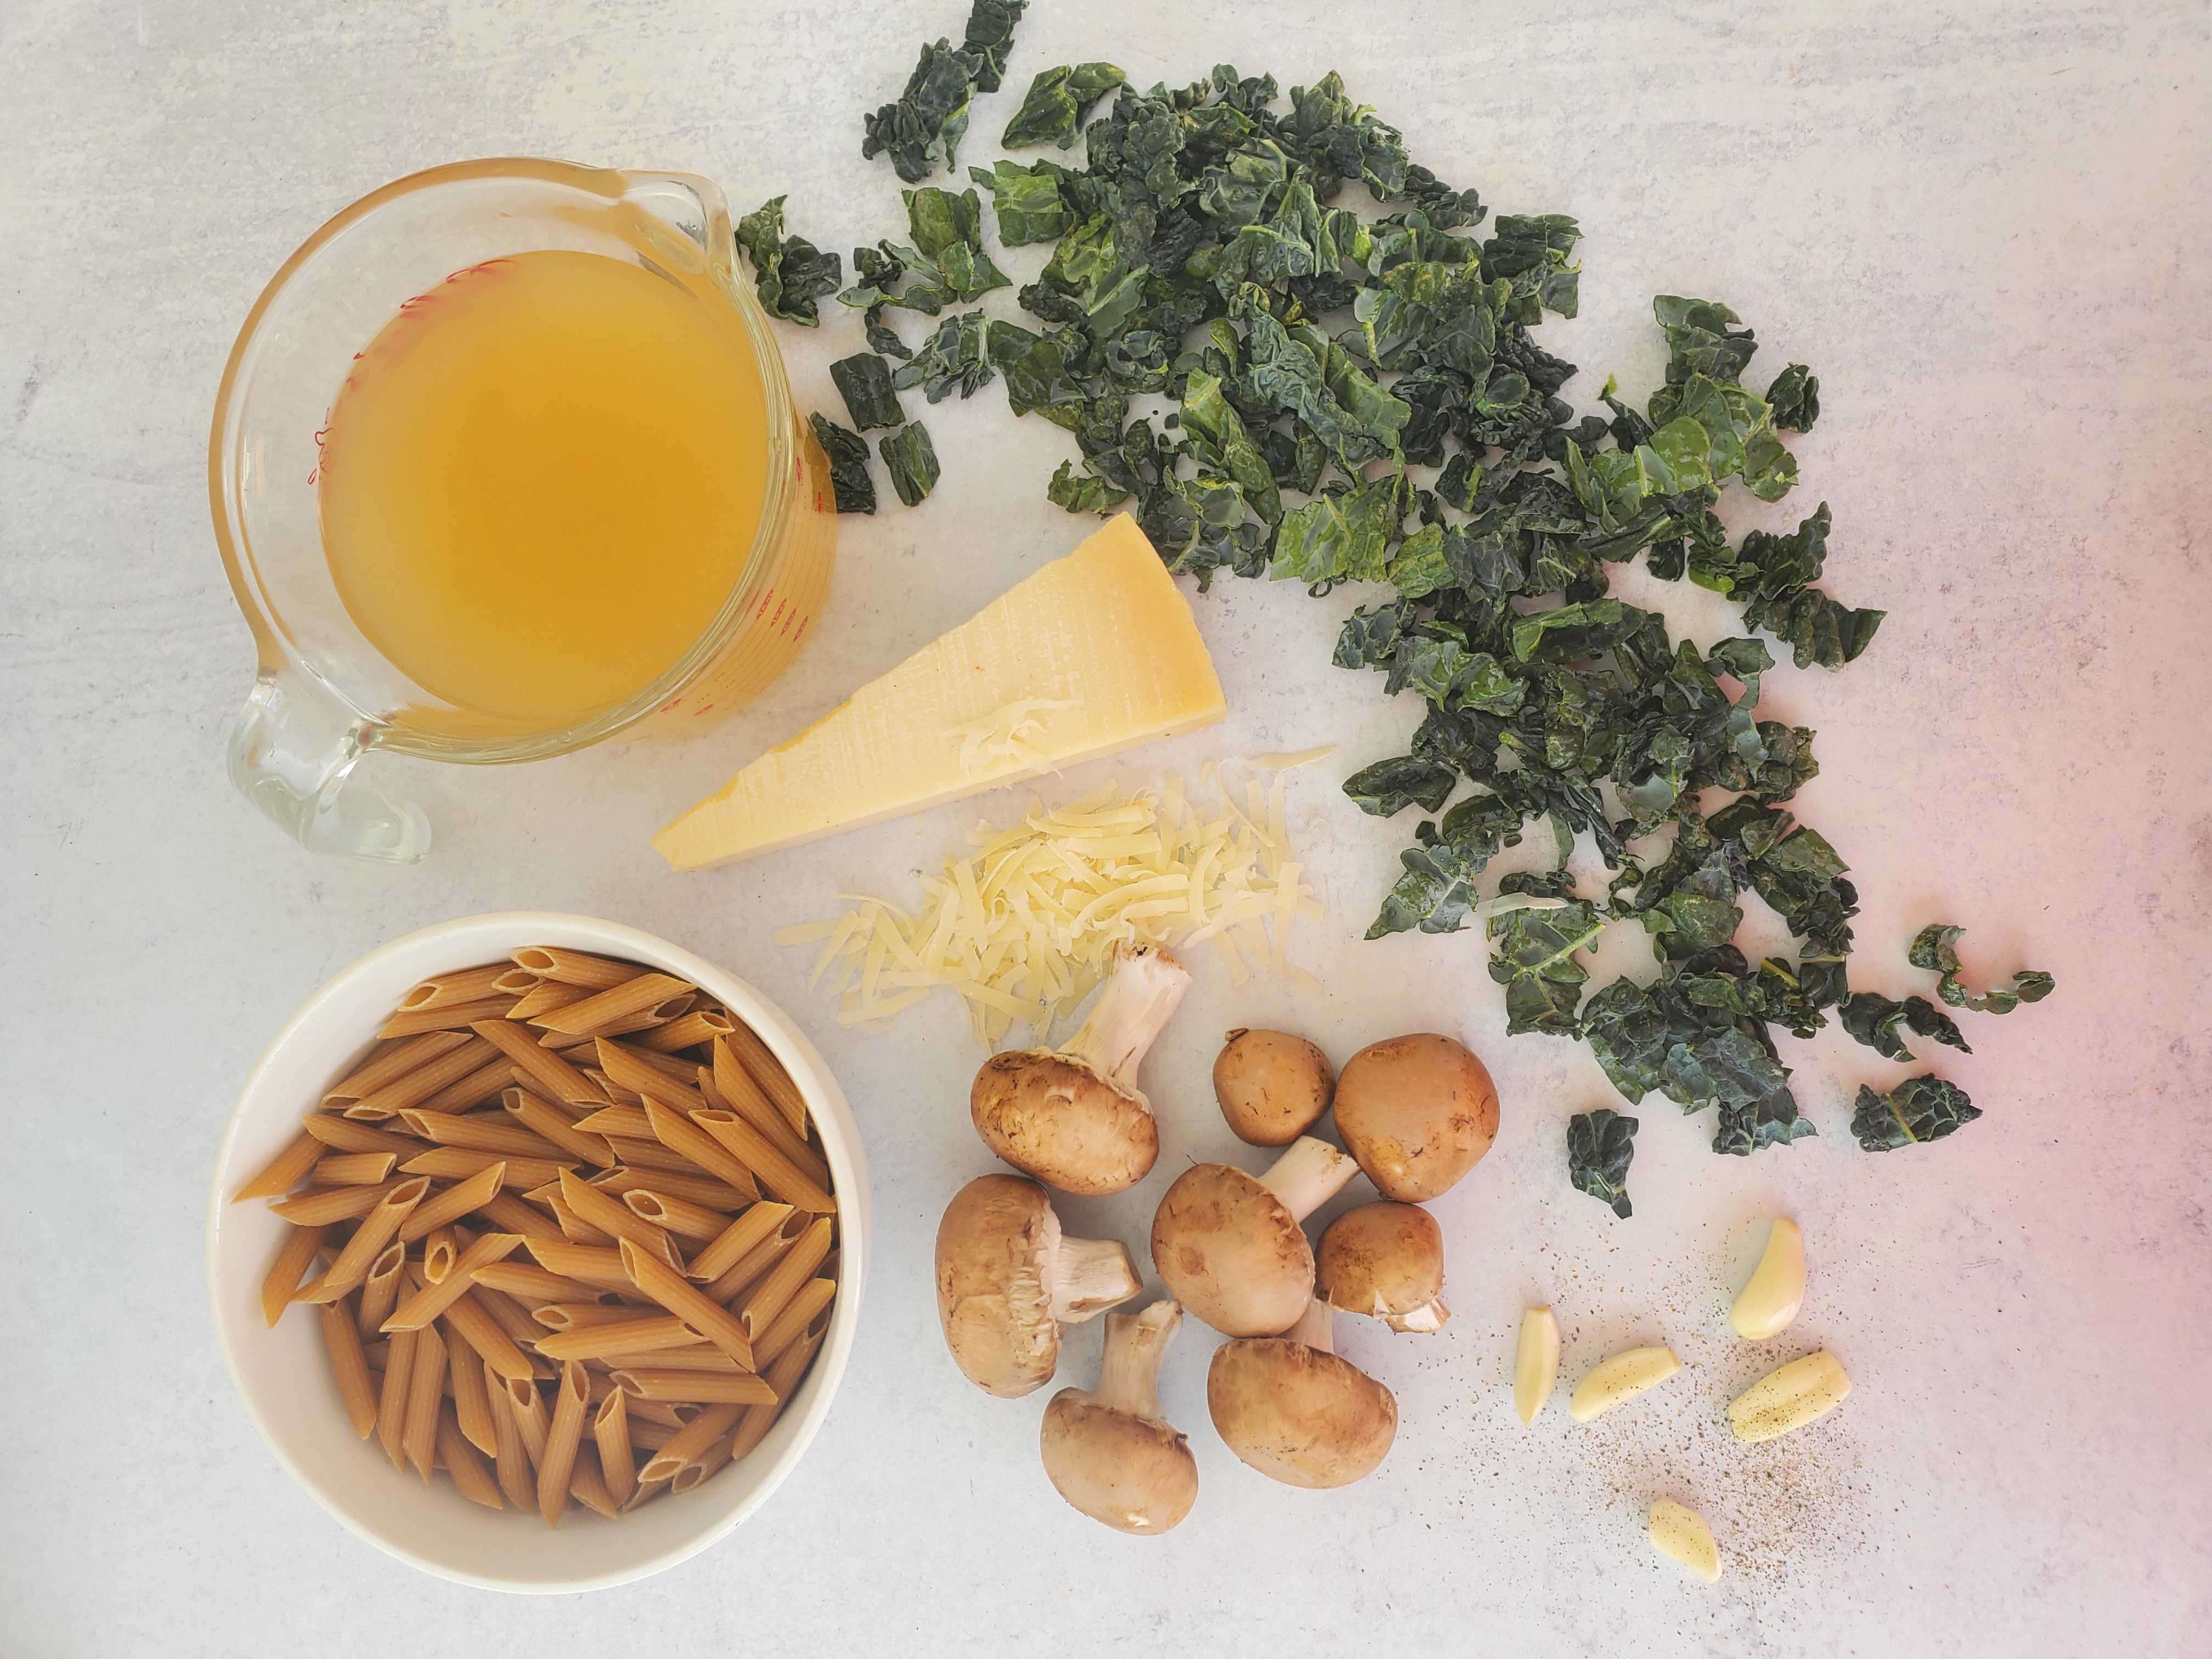 one-pot pasta ingredients: pasta, mushrooms, kale, broth, garlic, cheese